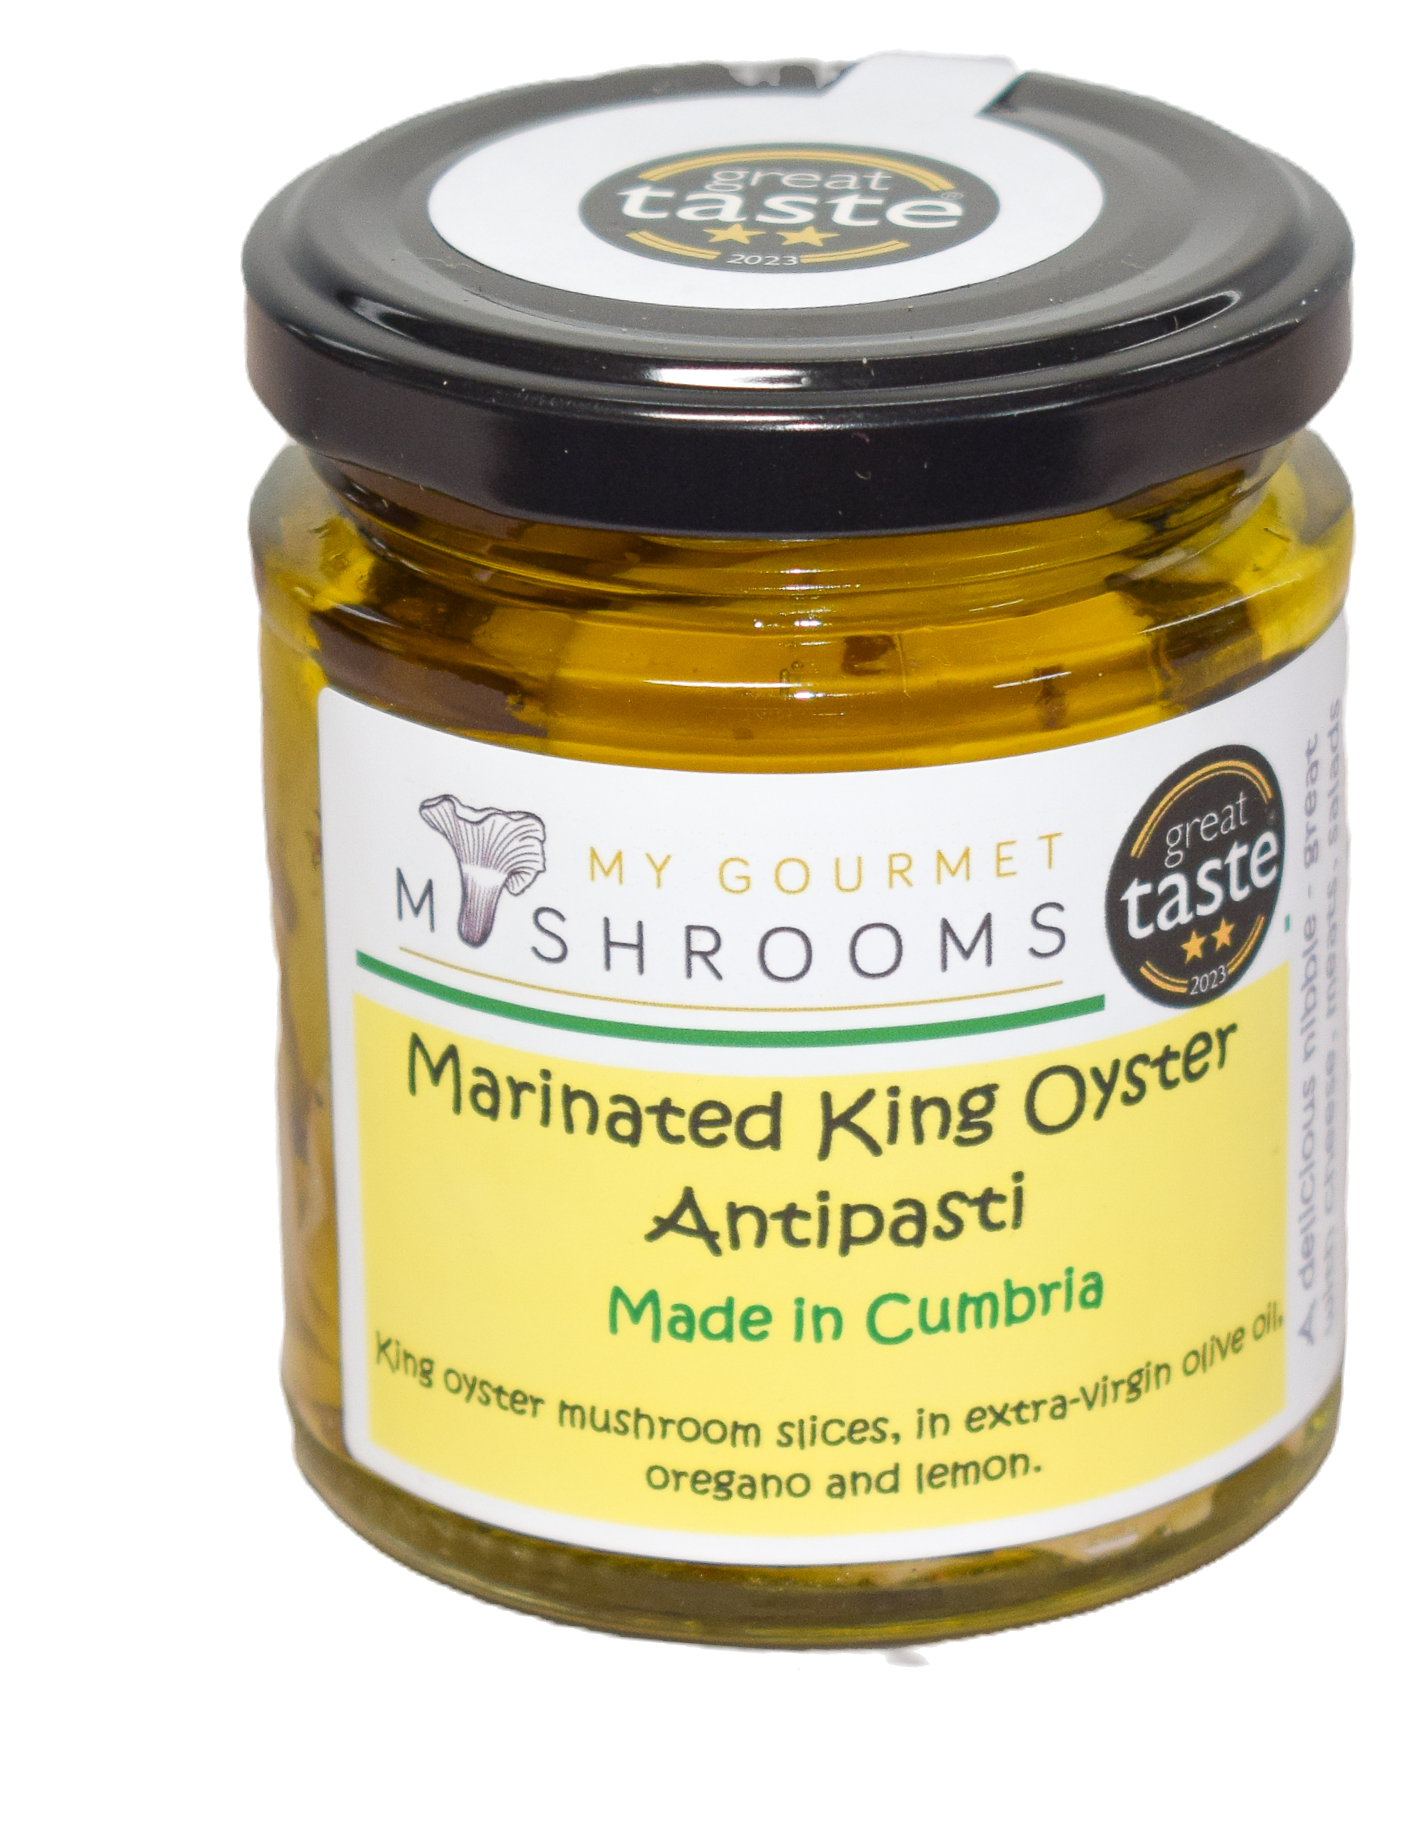 Marinated King Oyster Mushroom Antipasti - 190ml Jar -